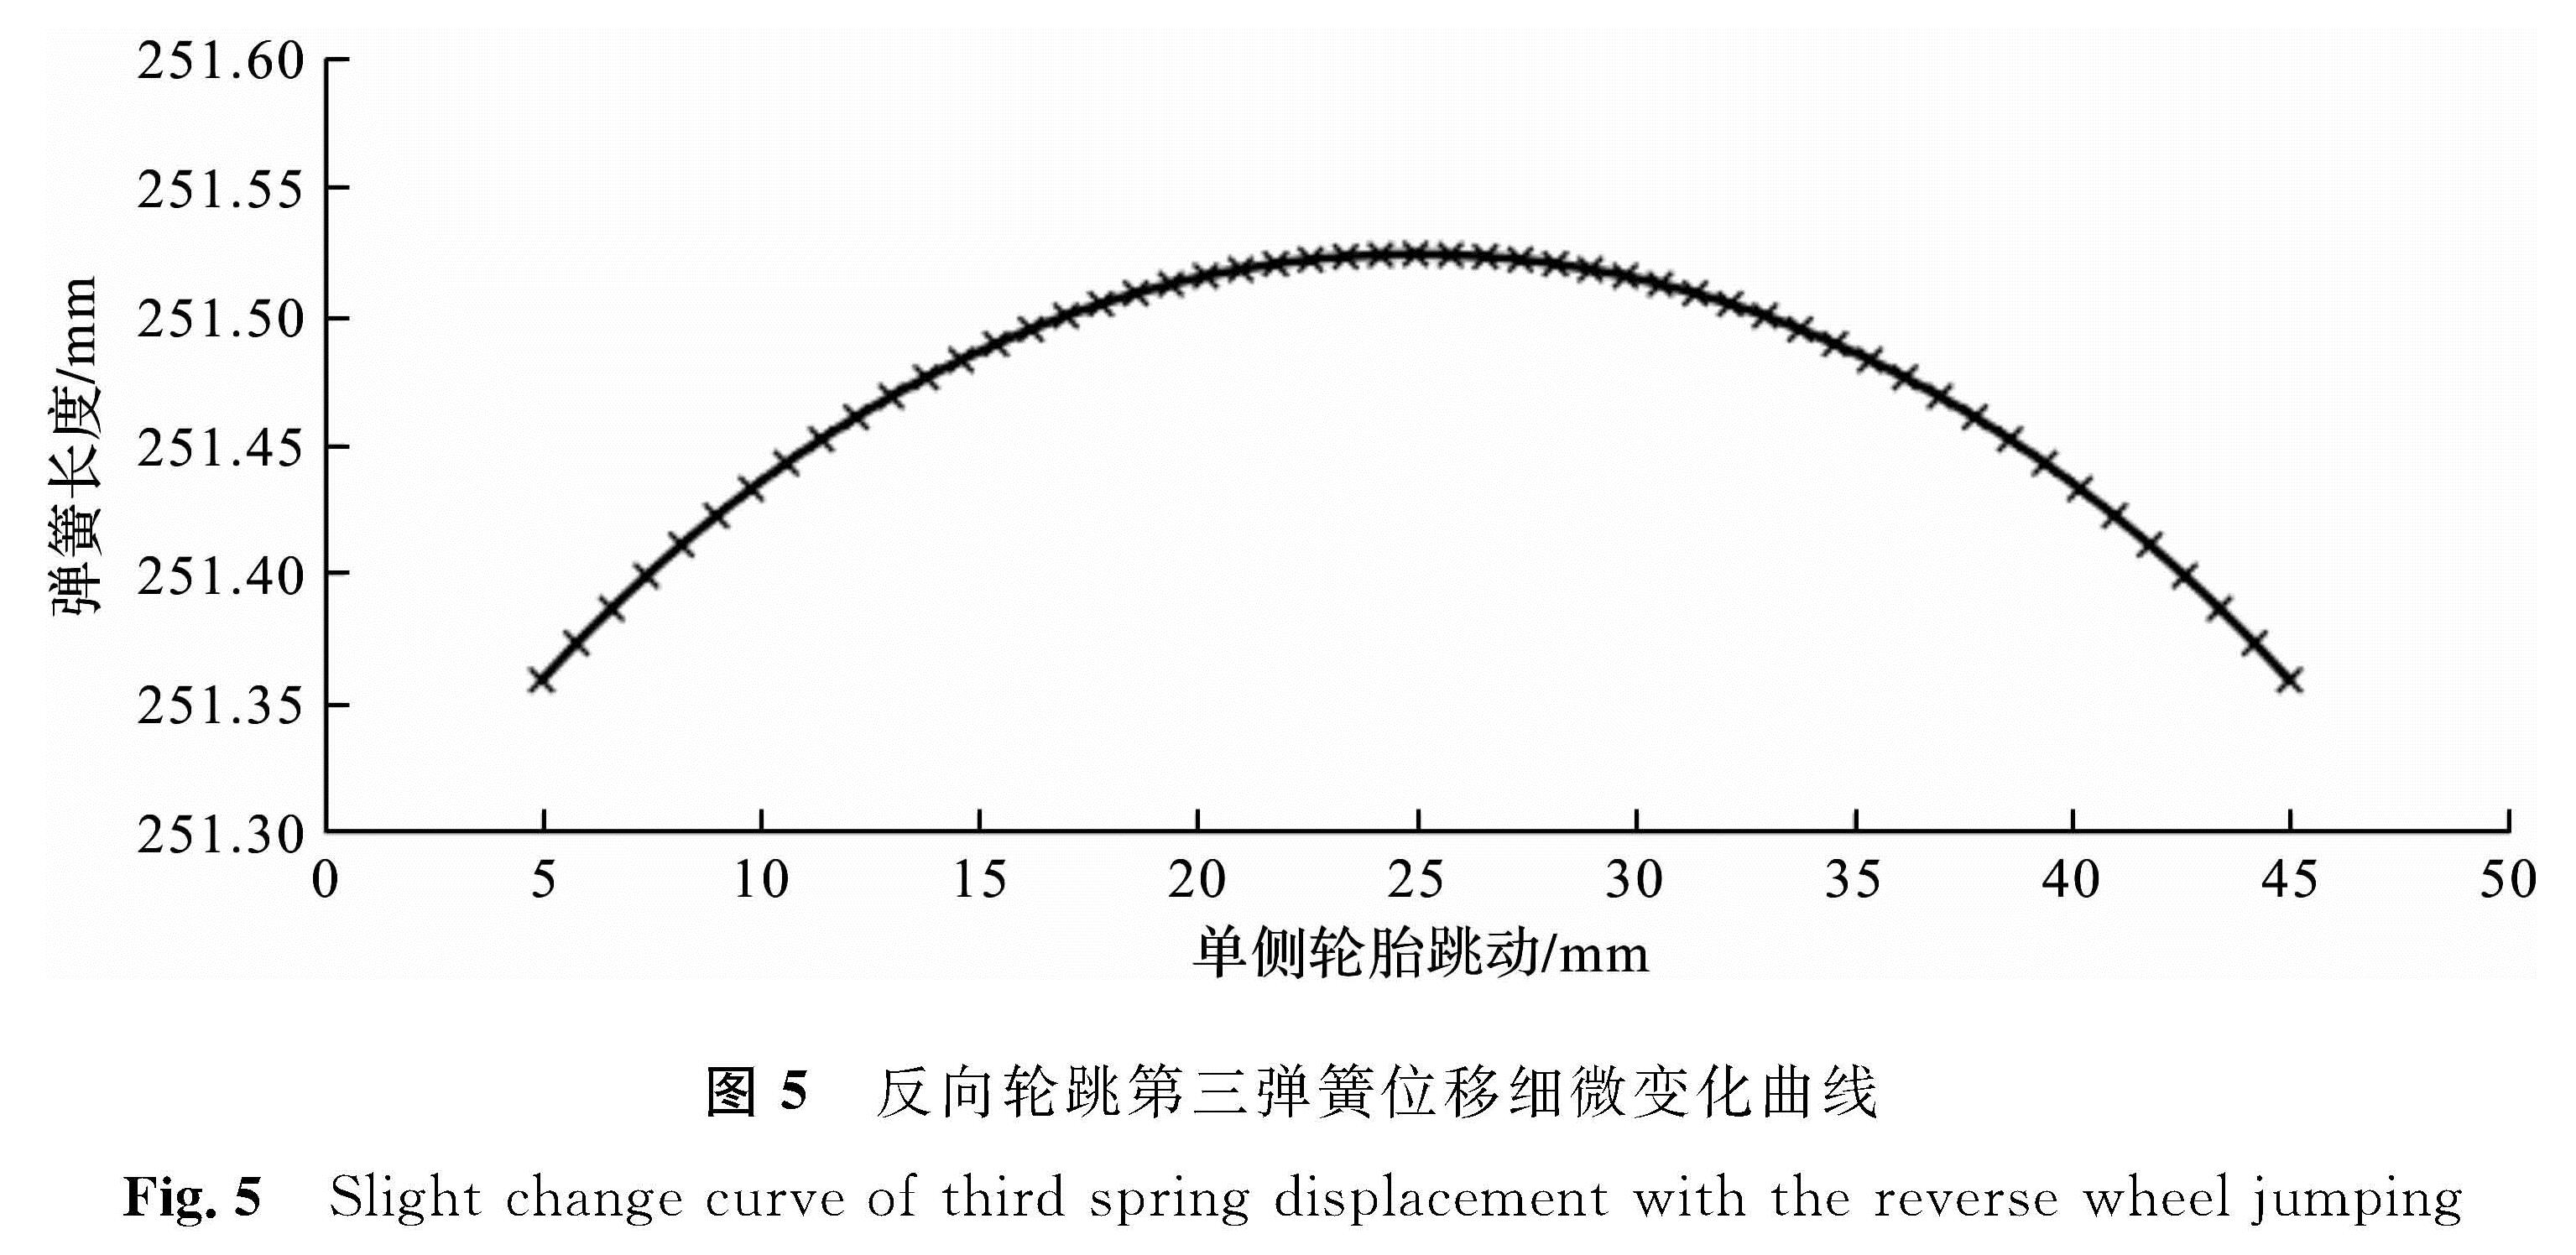 图5 反向轮跳第三弹簧位移细微变化曲线<br/>Fig.5 Slight change curve of third spring displacement with the reverse wheel jumping